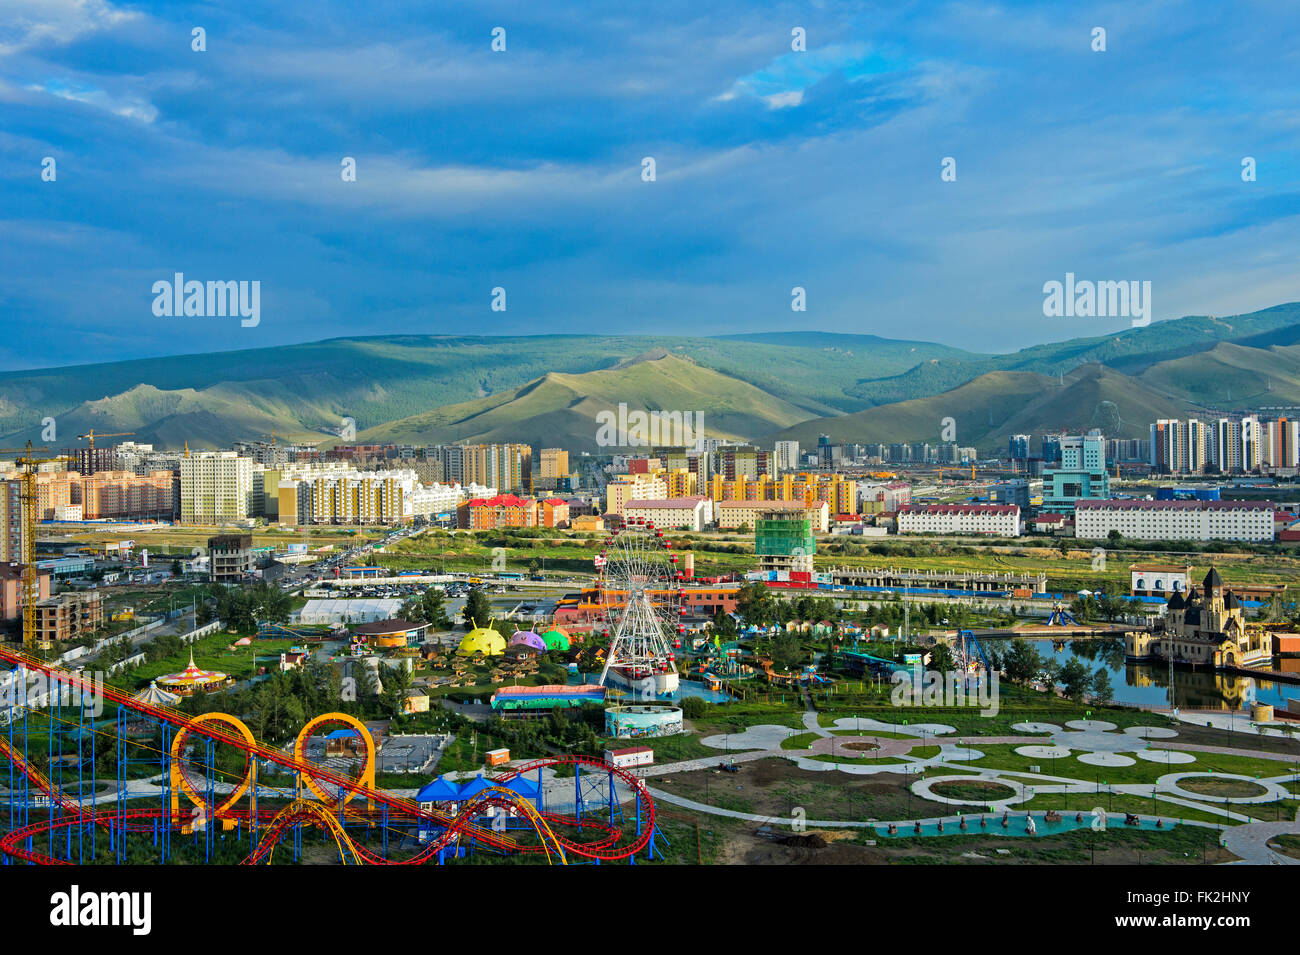 Vue sur le parc national et les nouveaux quartiers résidentiels dans le sud de Oulan-Bator, capitale de la Mongolie Banque D'Images